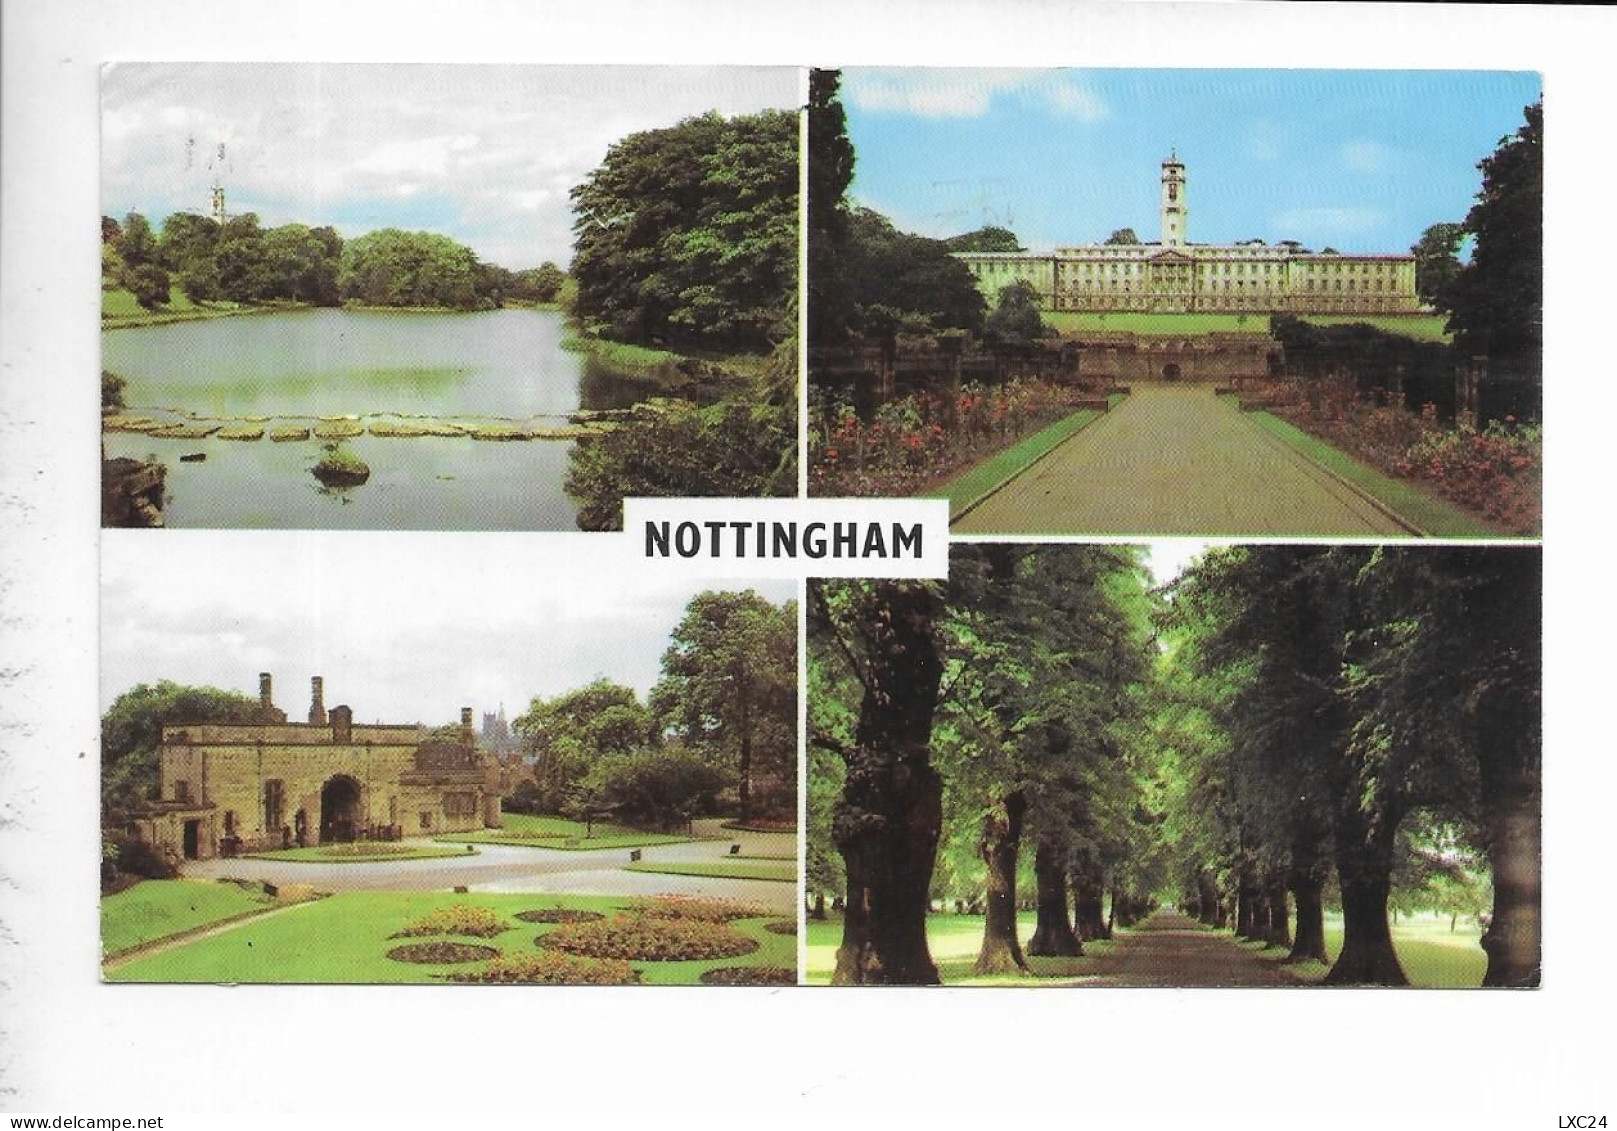 NOTTINGHAM. - Nottingham